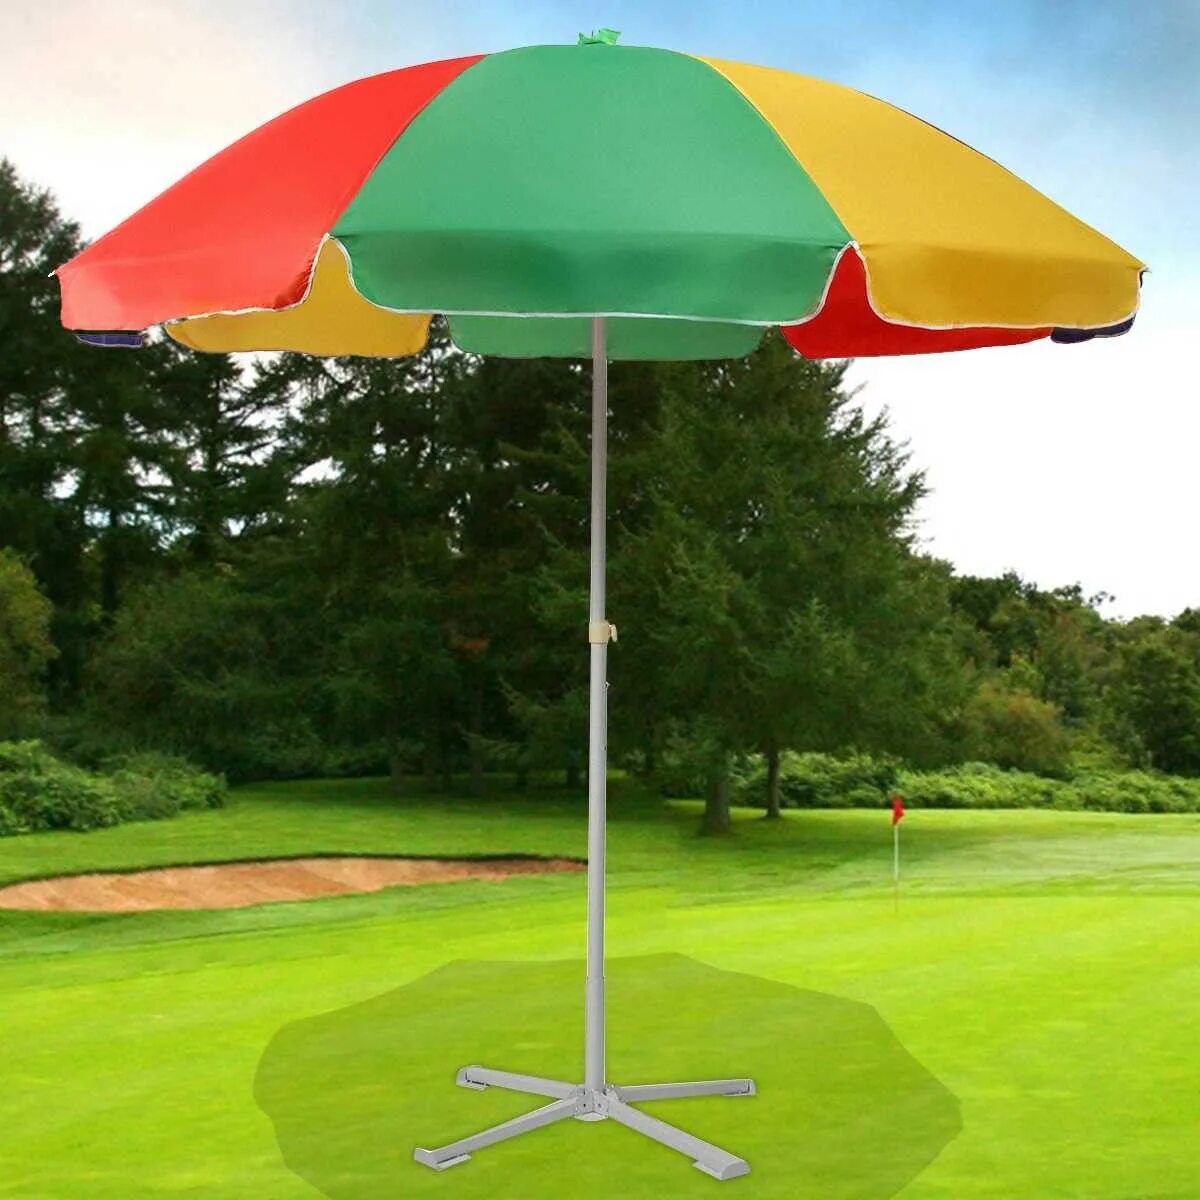 Зонт дачный большой. Зонт садовый Green Glade 6002. Парасоль зонт от солнца. Зонт пляжный (длина 200-210 см диаметр 180см). А002 3030 зонт.